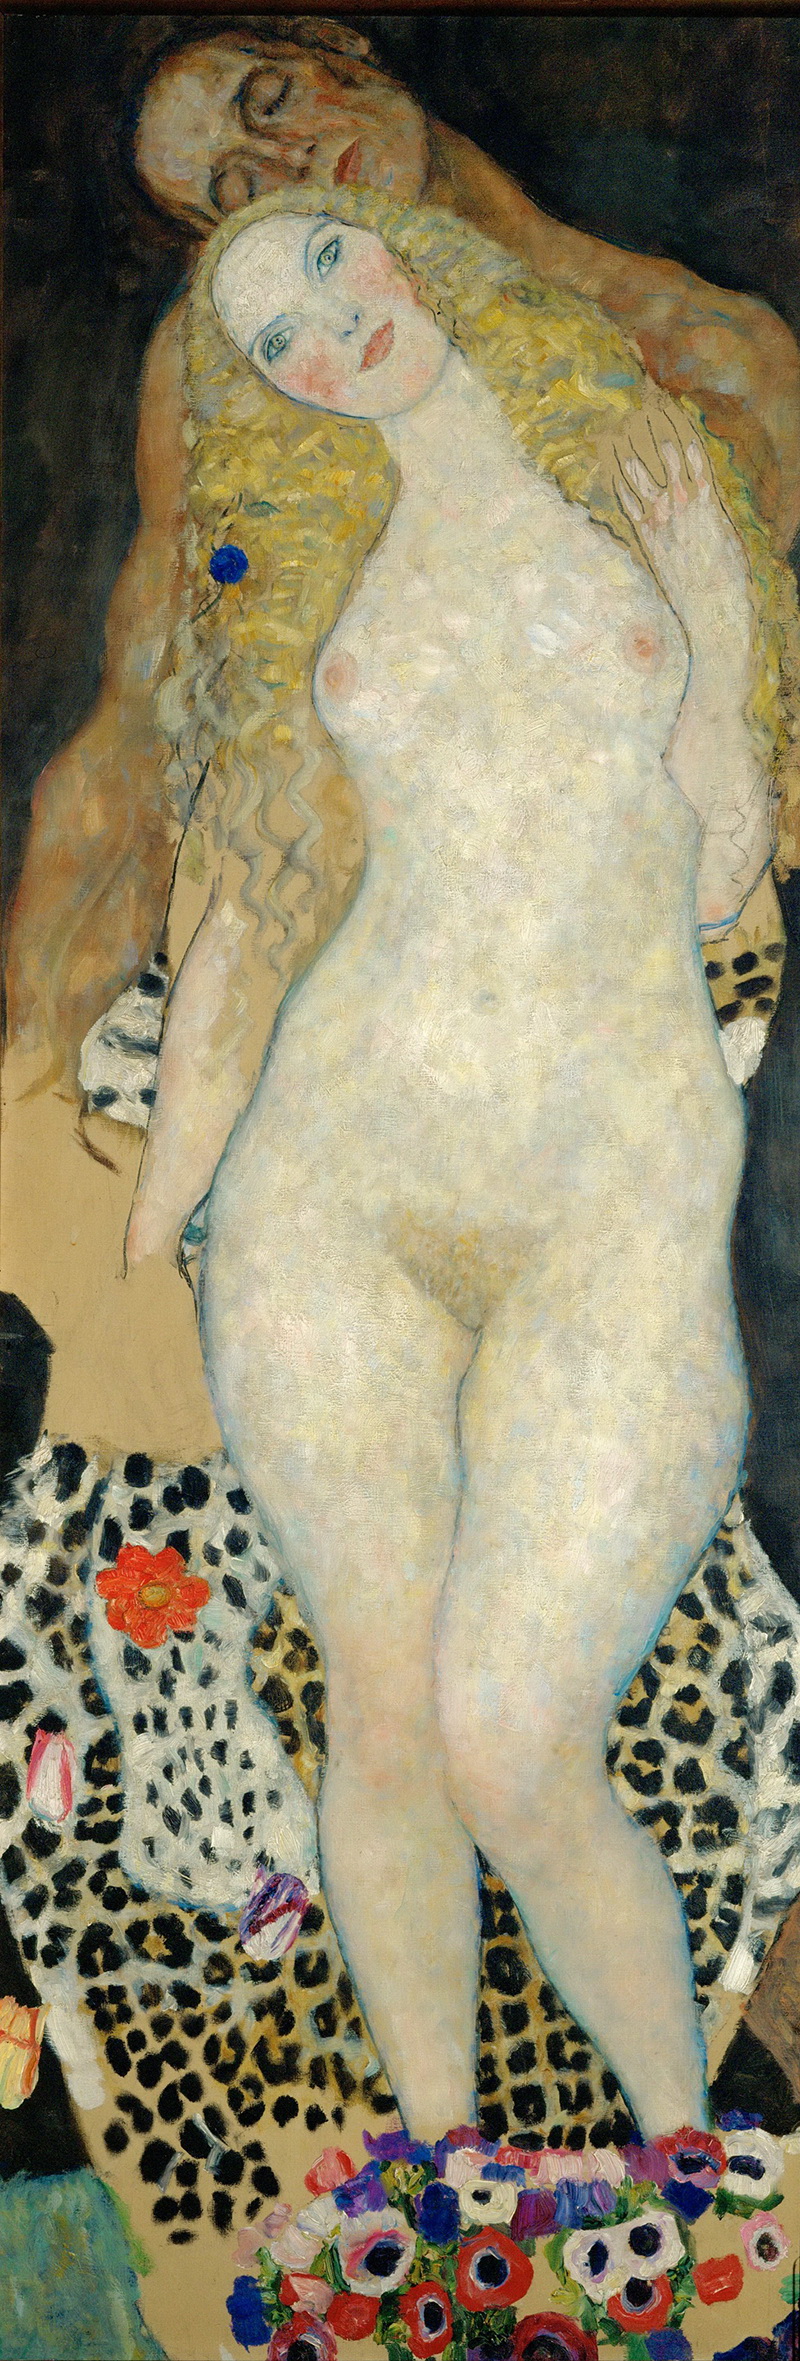 A017061《亚当与夏娃》奥地利画家古斯塔夫·克里姆特高清作品 奥地利-第1张